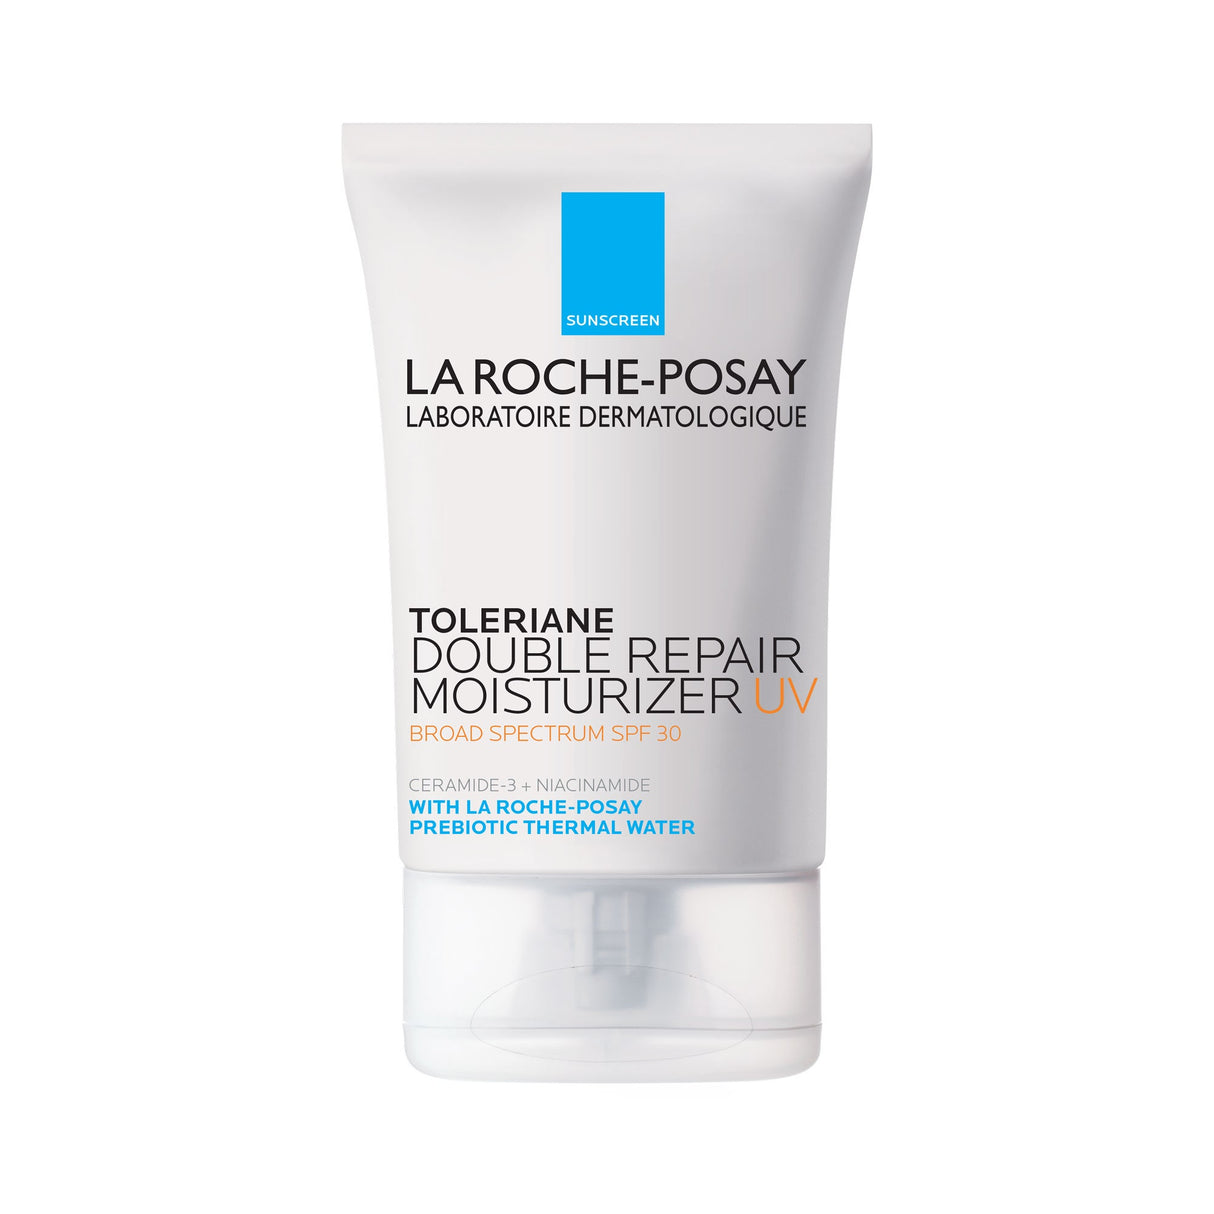 La Roche-Posay Toleriane Double Repair Face Moisturizer UV SPF 30 - LRPW (3.38 fl. oz.)